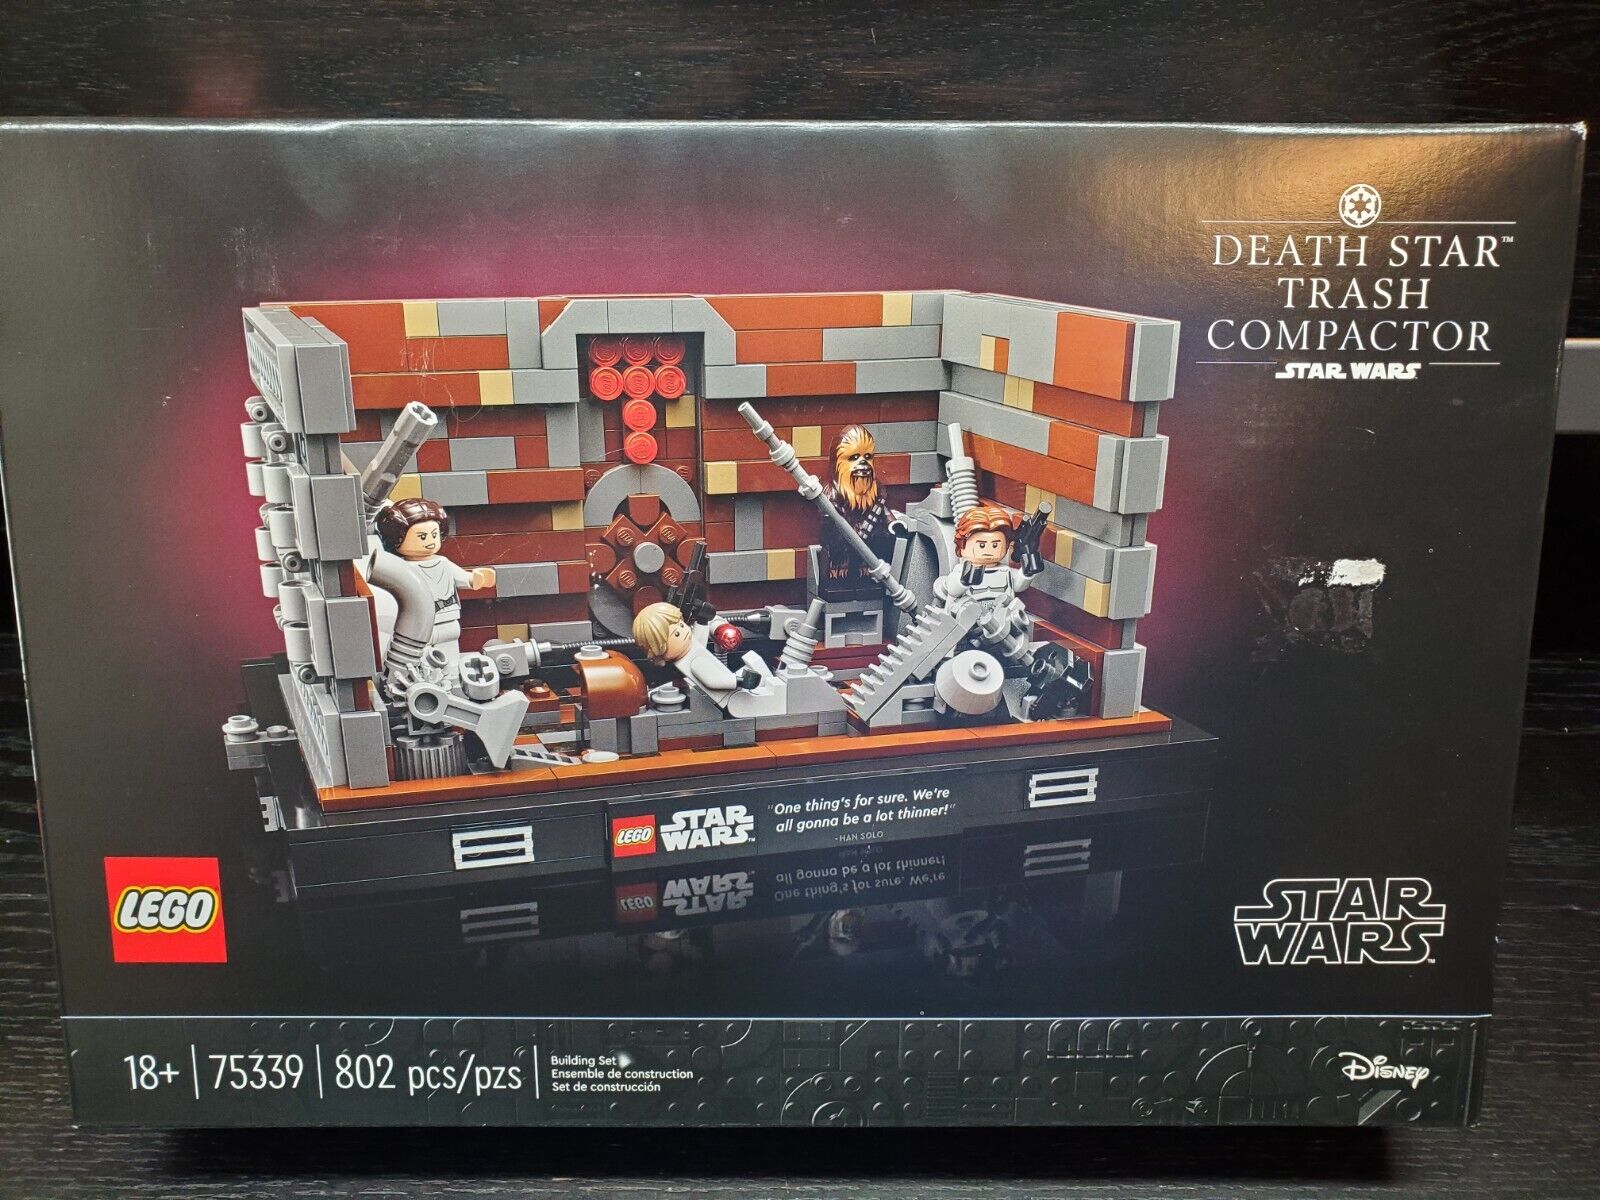 Lego Star Wars Death Star Trash Compactor Diorama 75339 (802pcs) Building Toy